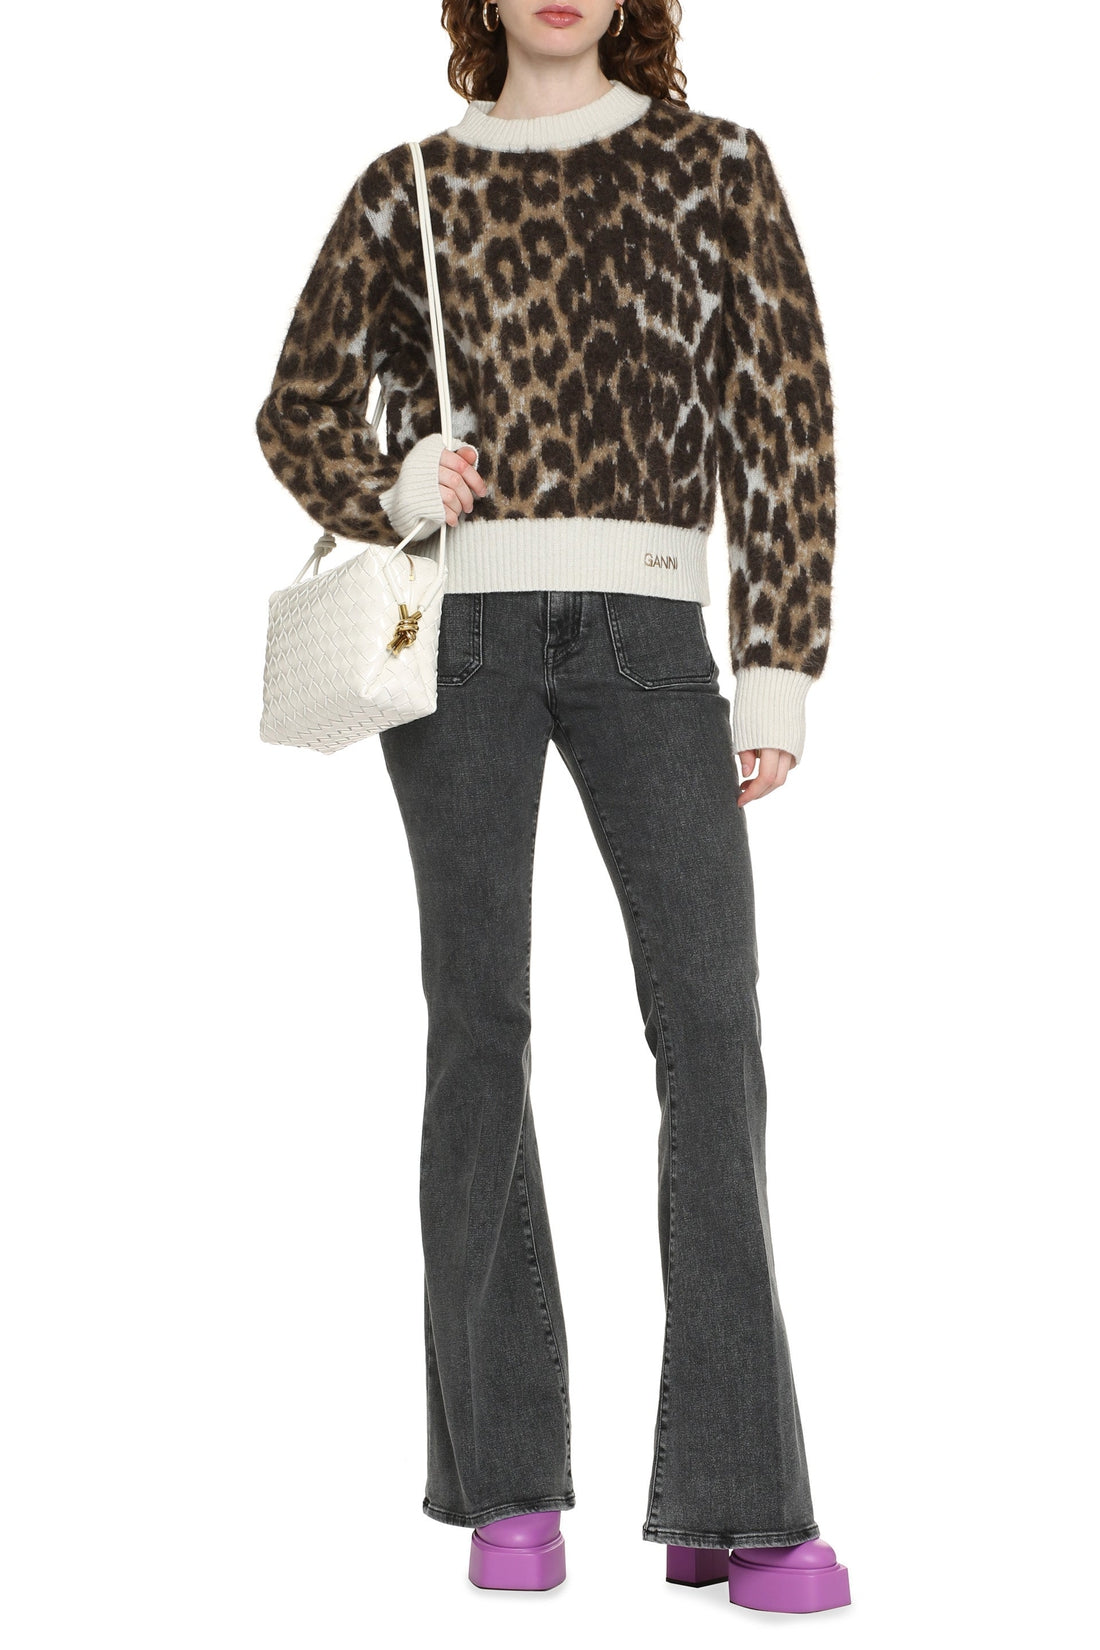 GANNI-OUTLET-SALE-Leopard motif sweater-ARCHIVIST